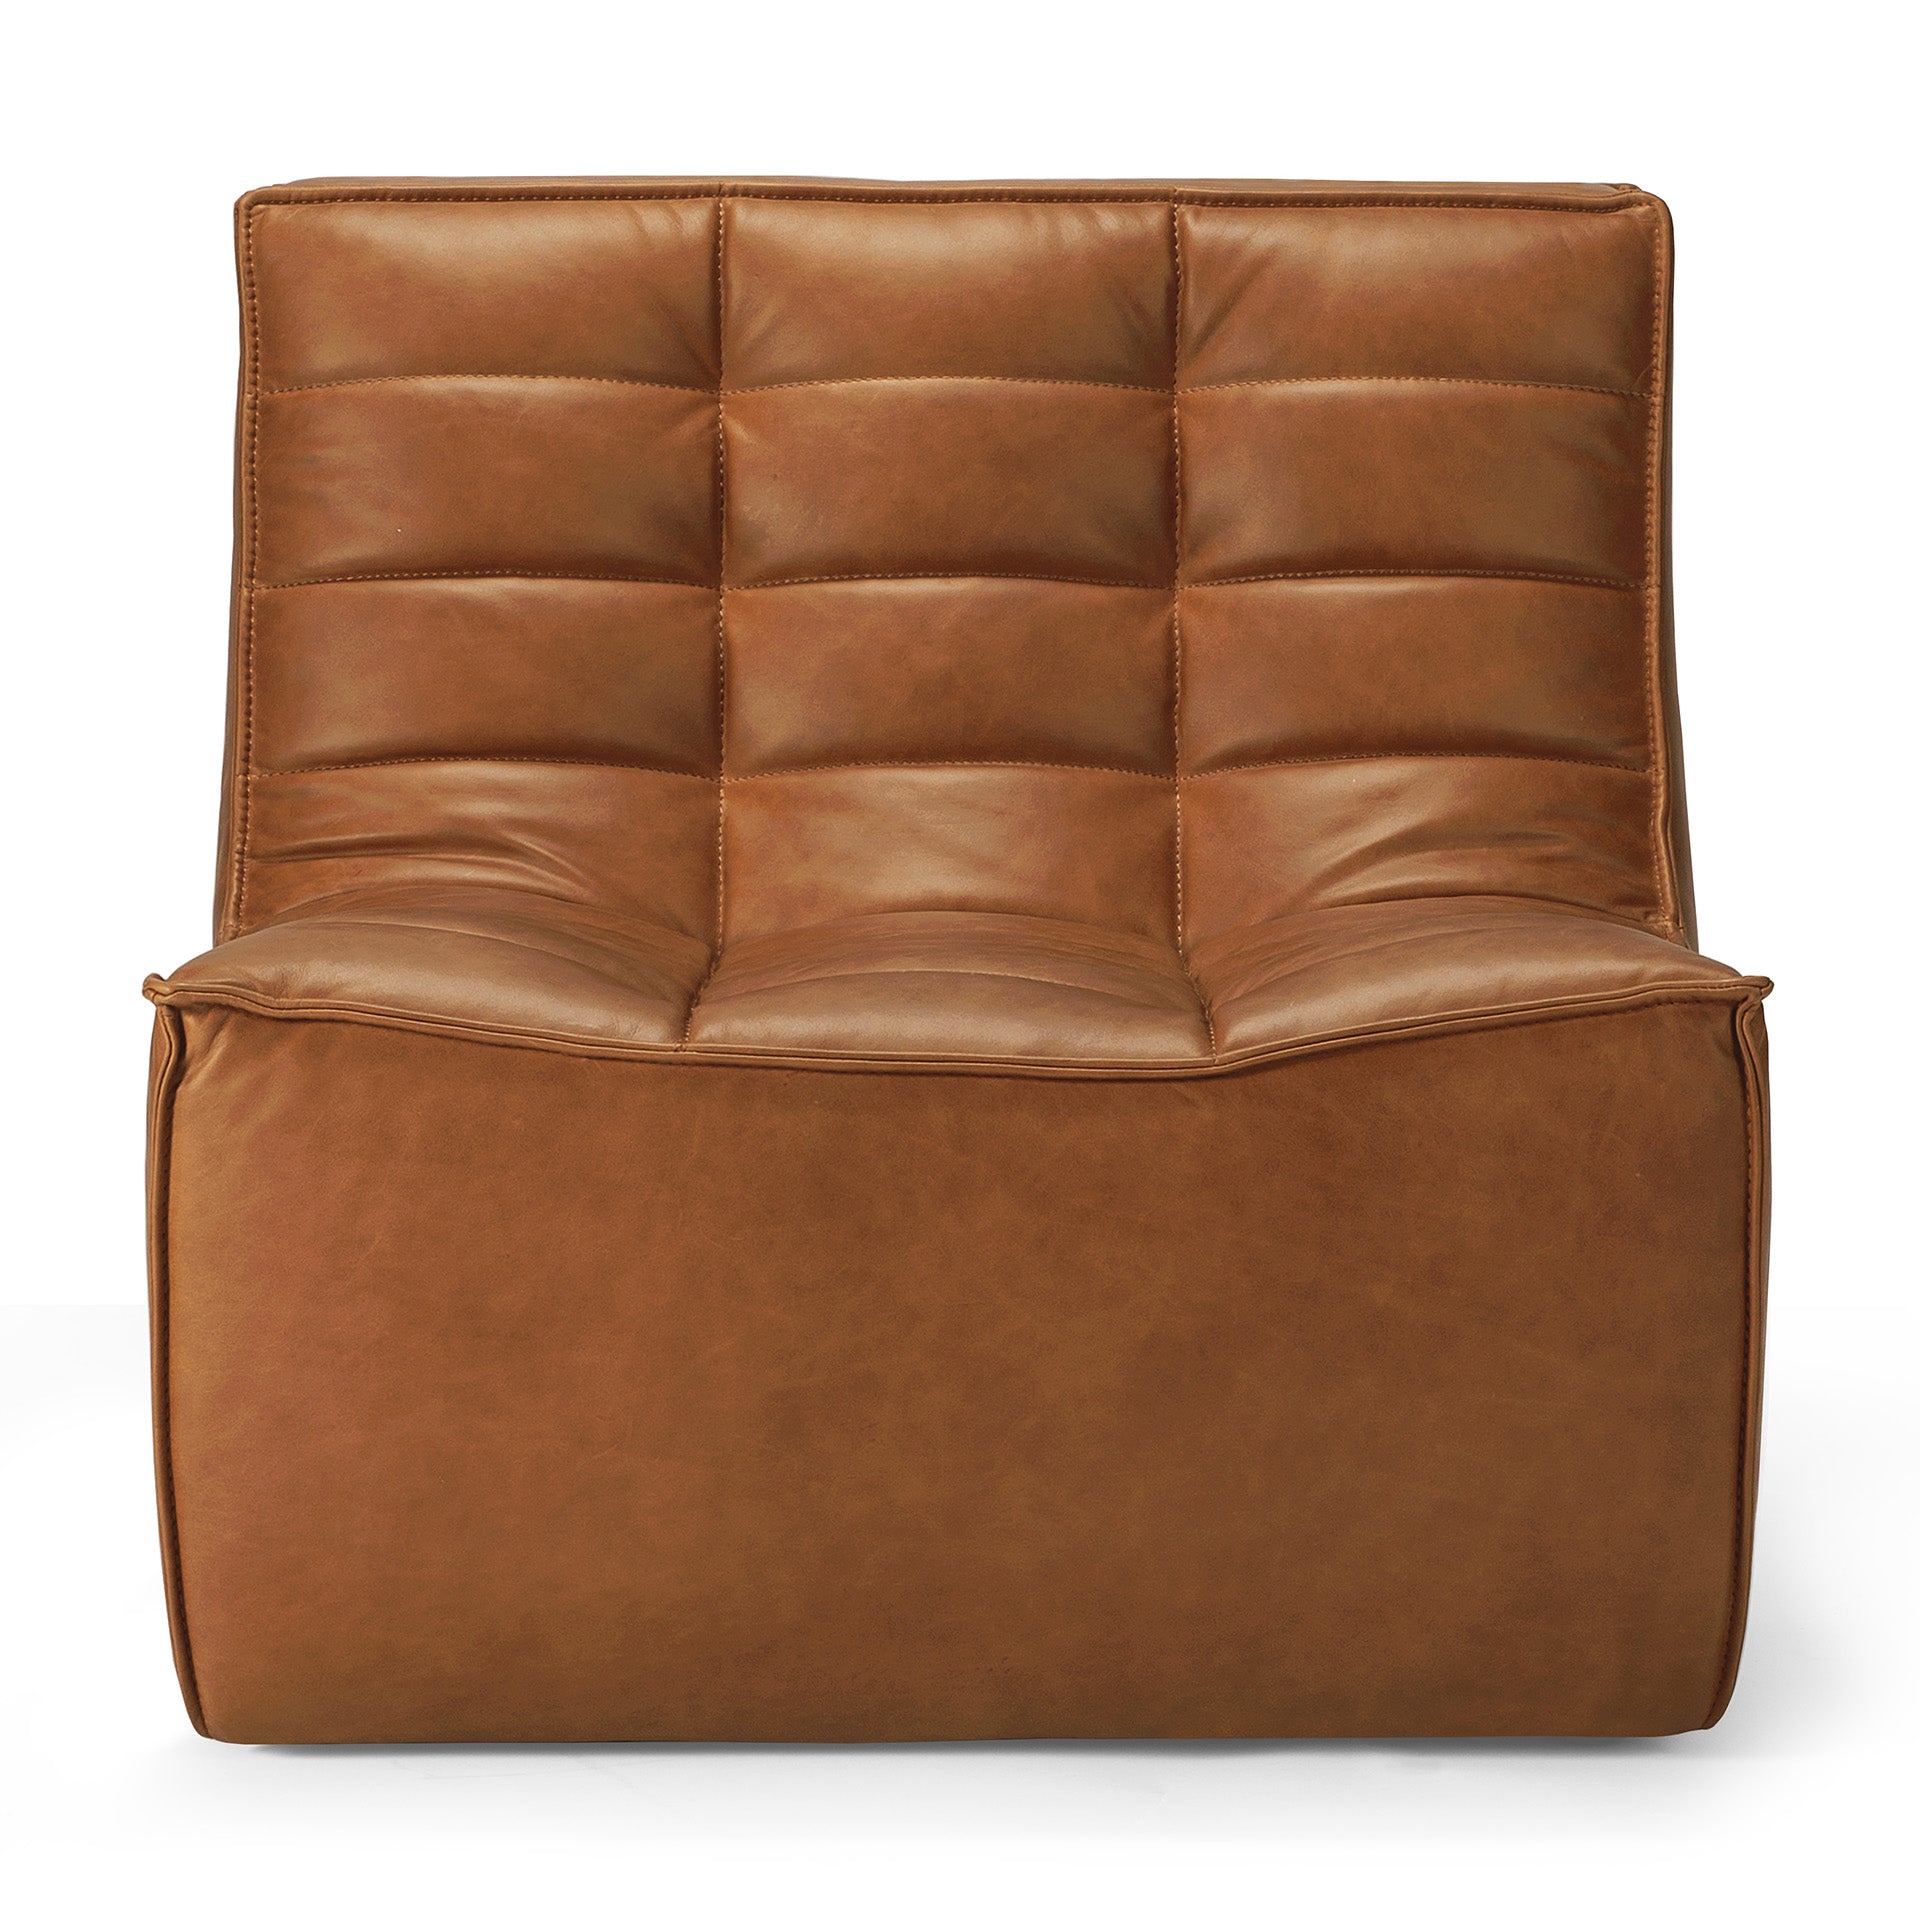 N701 Single Seater Sofa, Old Saddle Leather